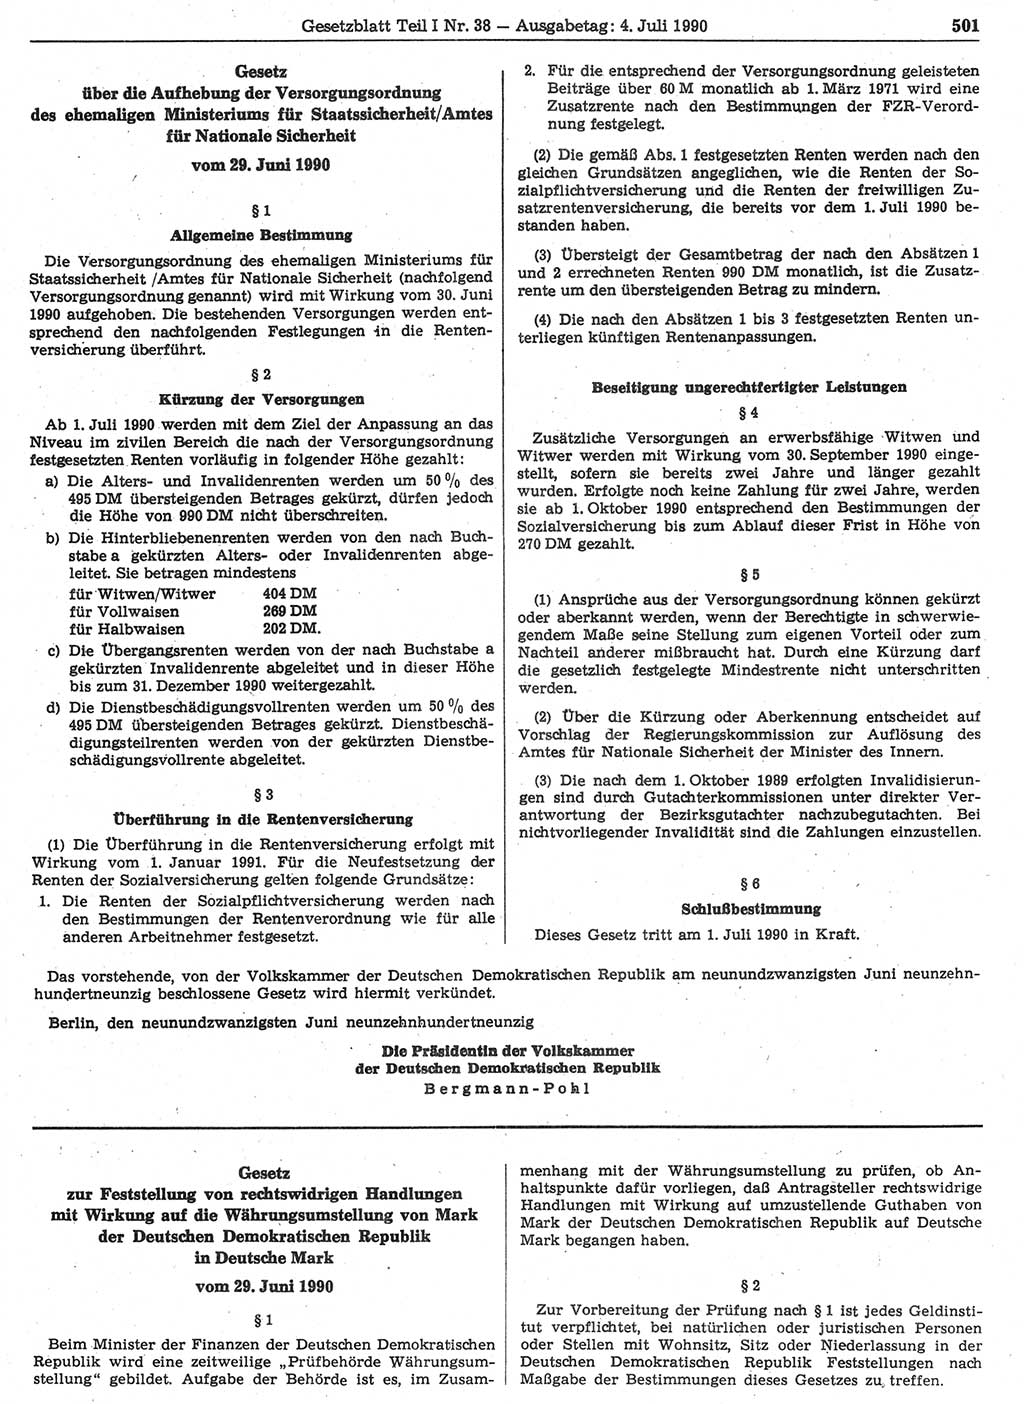 Gesetzblatt (GBl.) der Deutschen Demokratischen Republik (DDR) Teil Ⅰ 1990, Seite 501 (GBl. DDR Ⅰ 1990, S. 501)